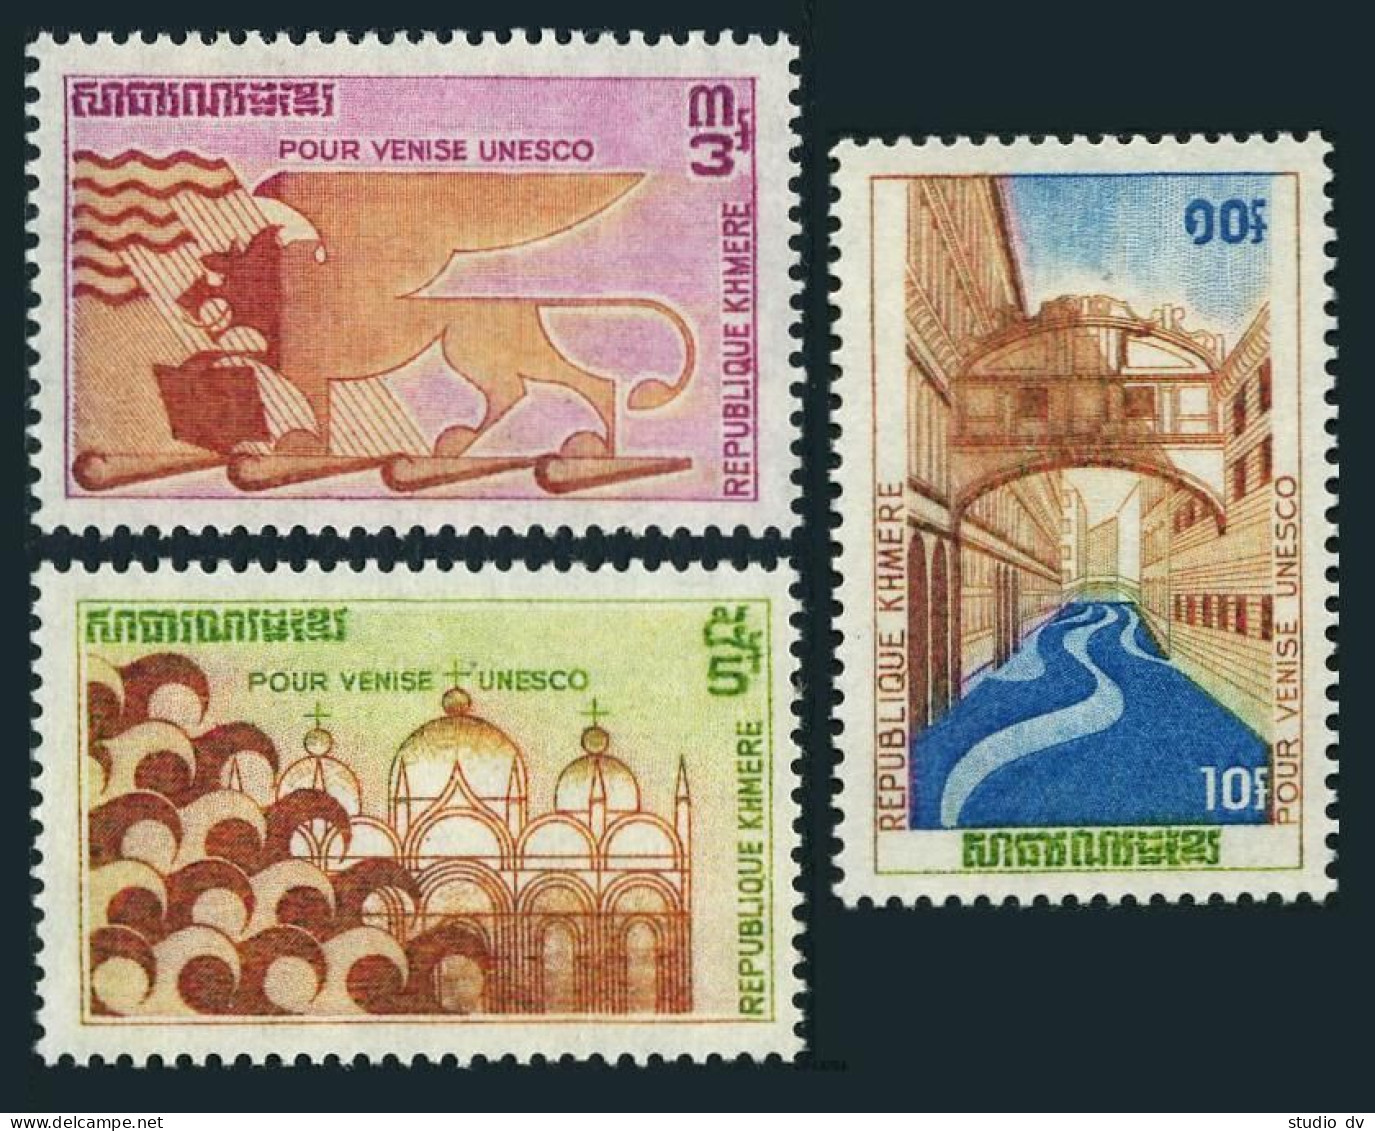 Cambodia 275-277, MNH. Michel 318-320. UNESCO Campaign To Save Venice, 1972. - Cambodia